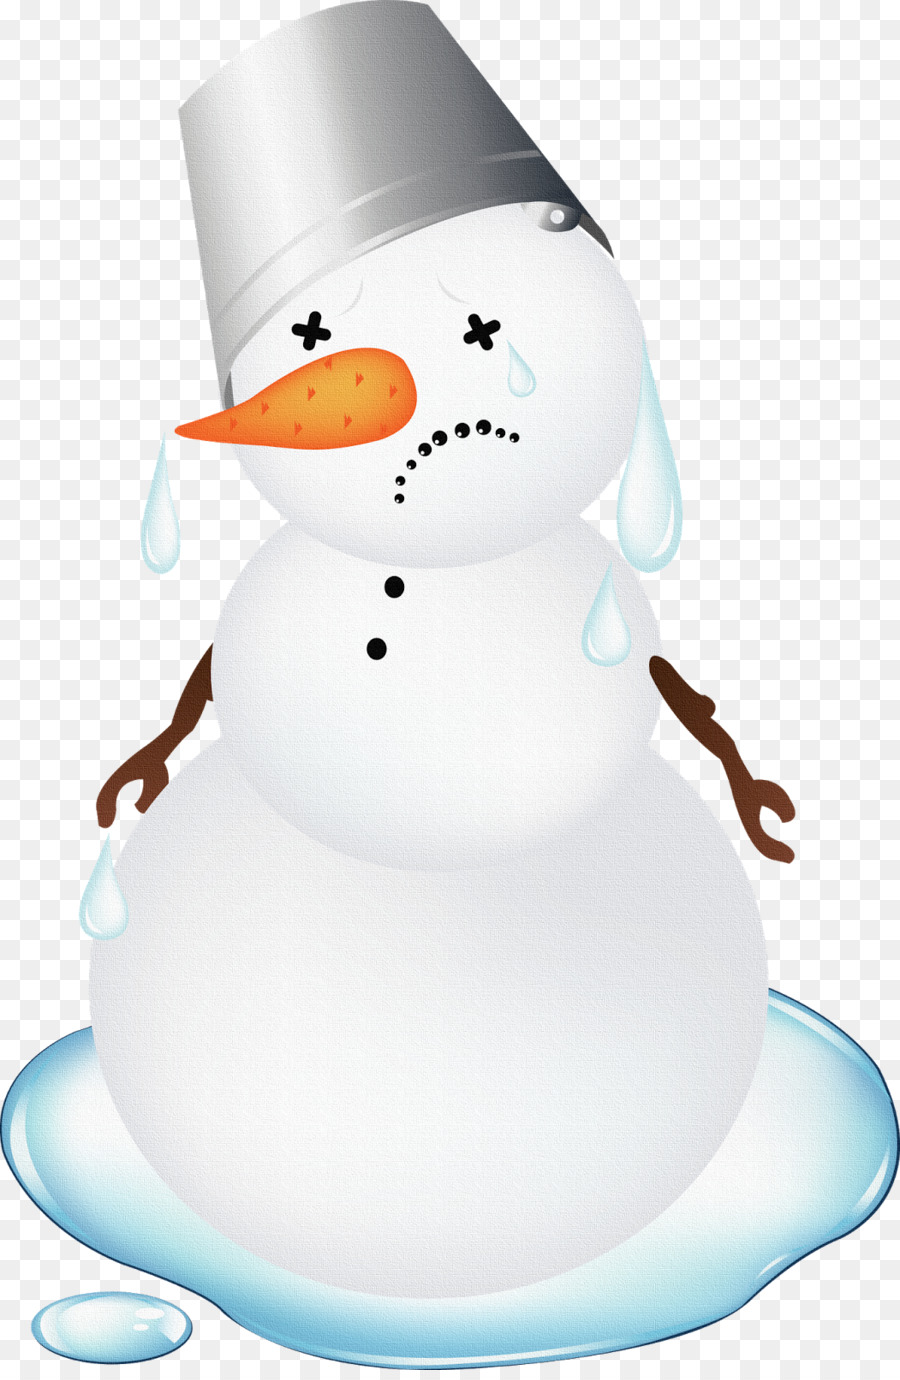 Snowman Clip art - snowman png download - 1050*1080 - Free Transparent ...